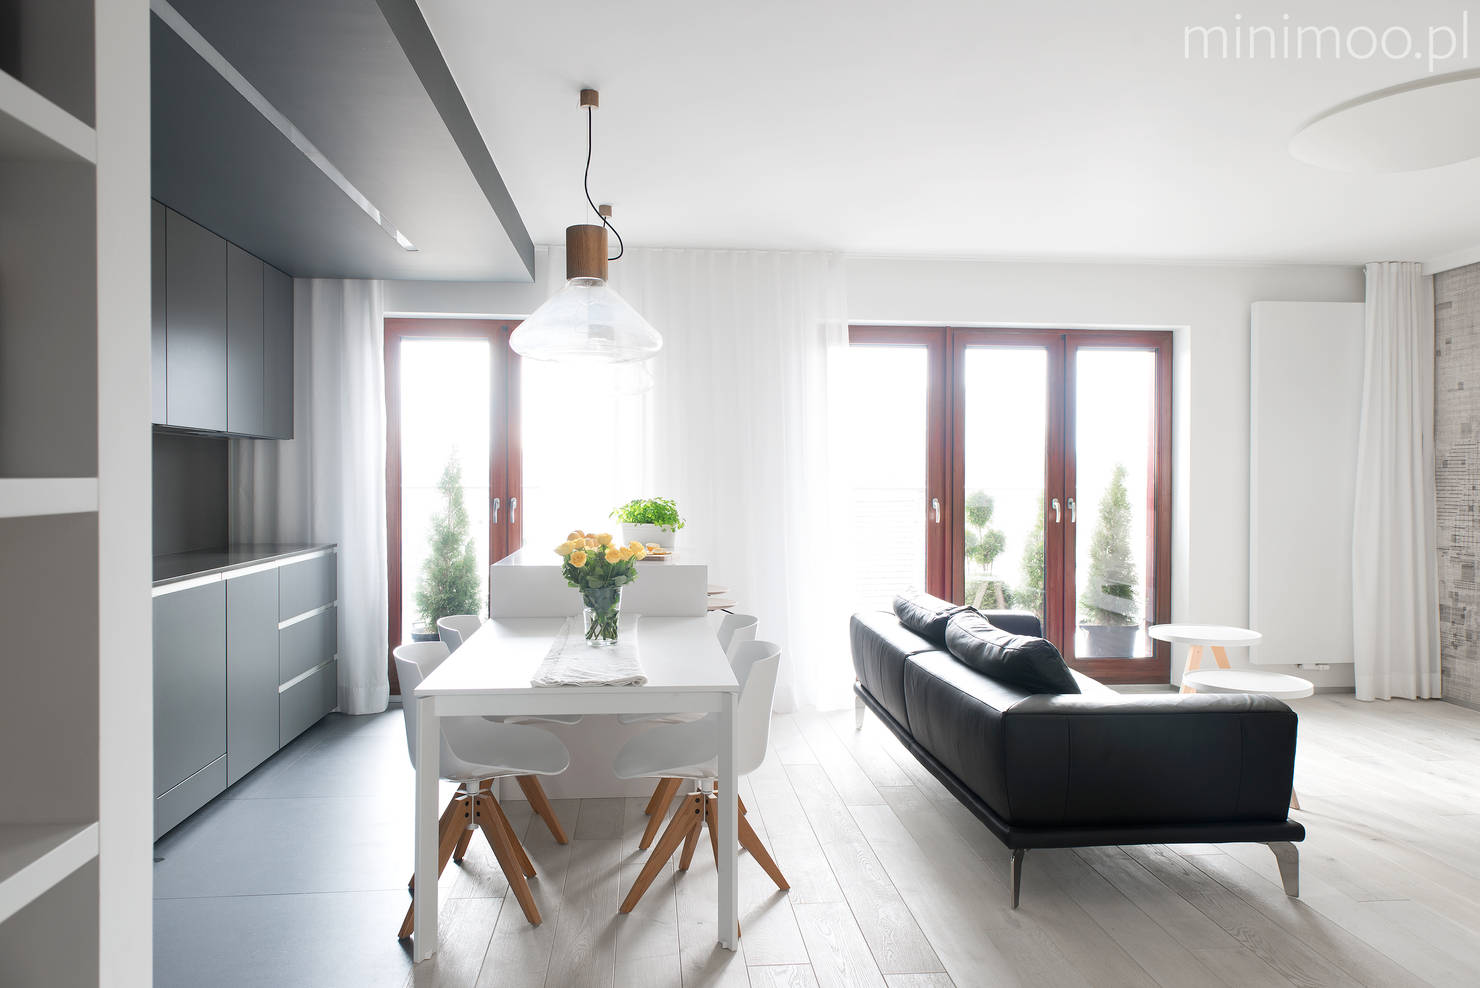 Дизайн квартиры в скандинавском стиле- фотографии
				